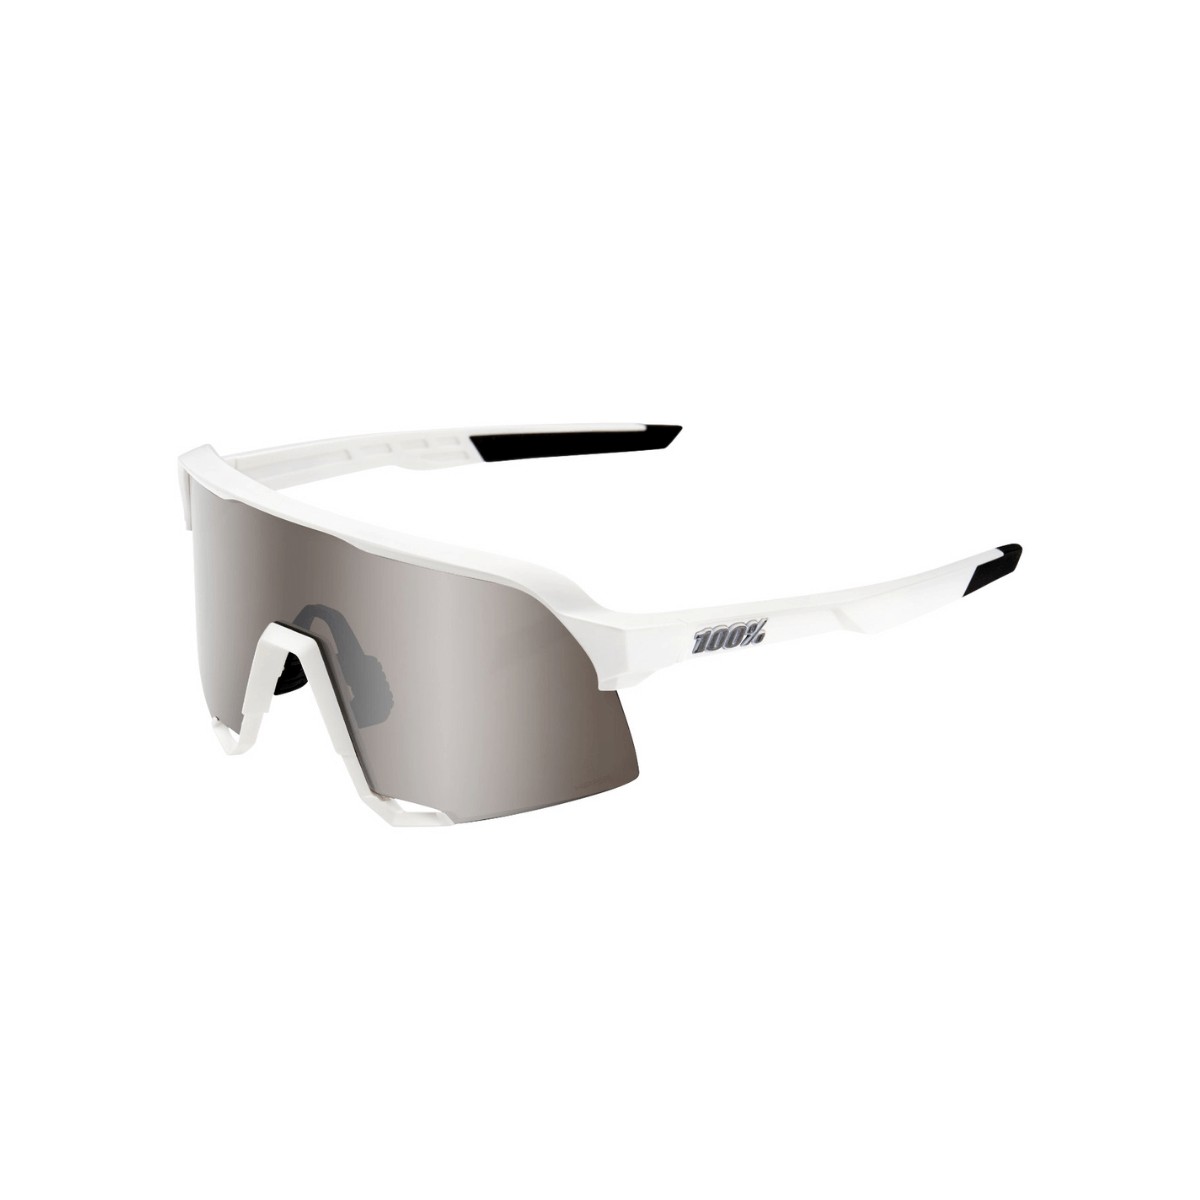 Brille 100% S3 Mattweiß Hyper Silver Gläser